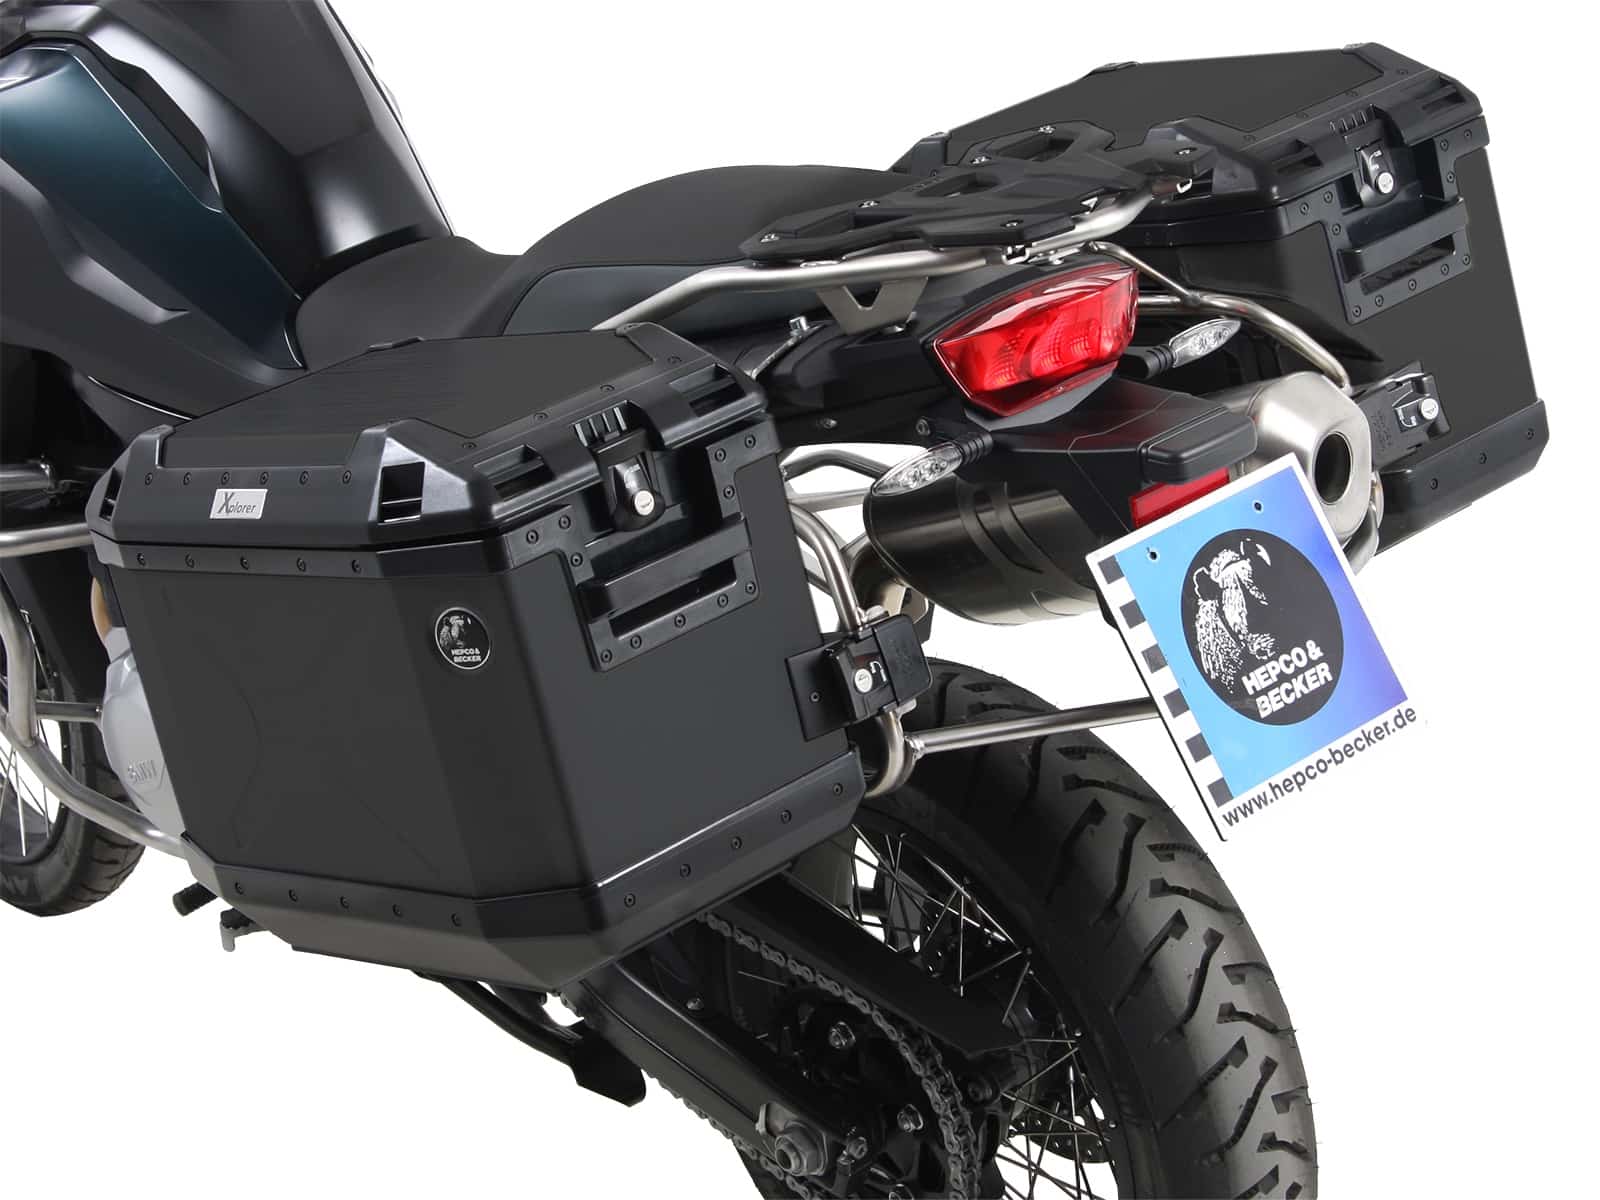 Kofferträgerset Cutout Edelstahlträger inkl. Xplorer schwarz Kofferset für BMW F 850 GS Adventure (2019-)